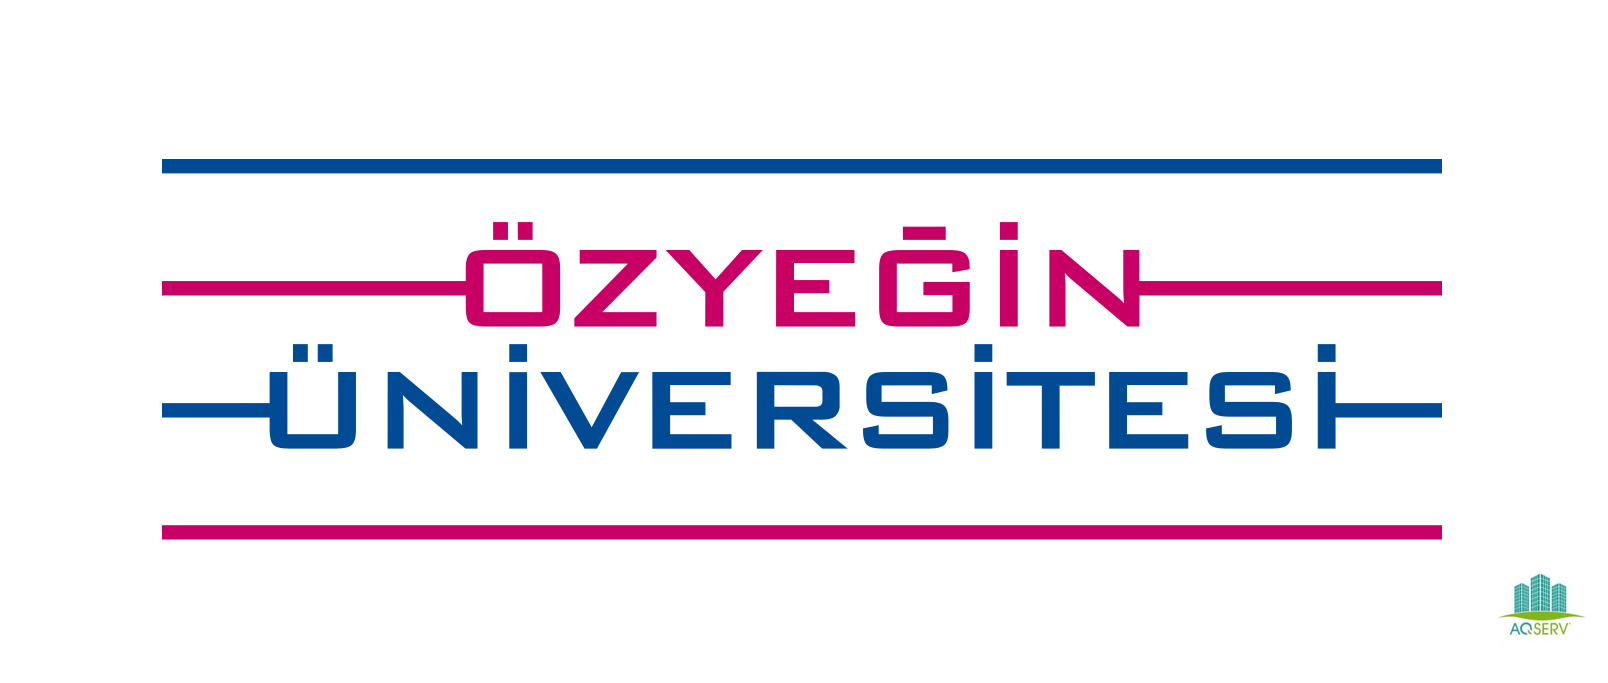 جامعة أوزيجين Özyeğin University